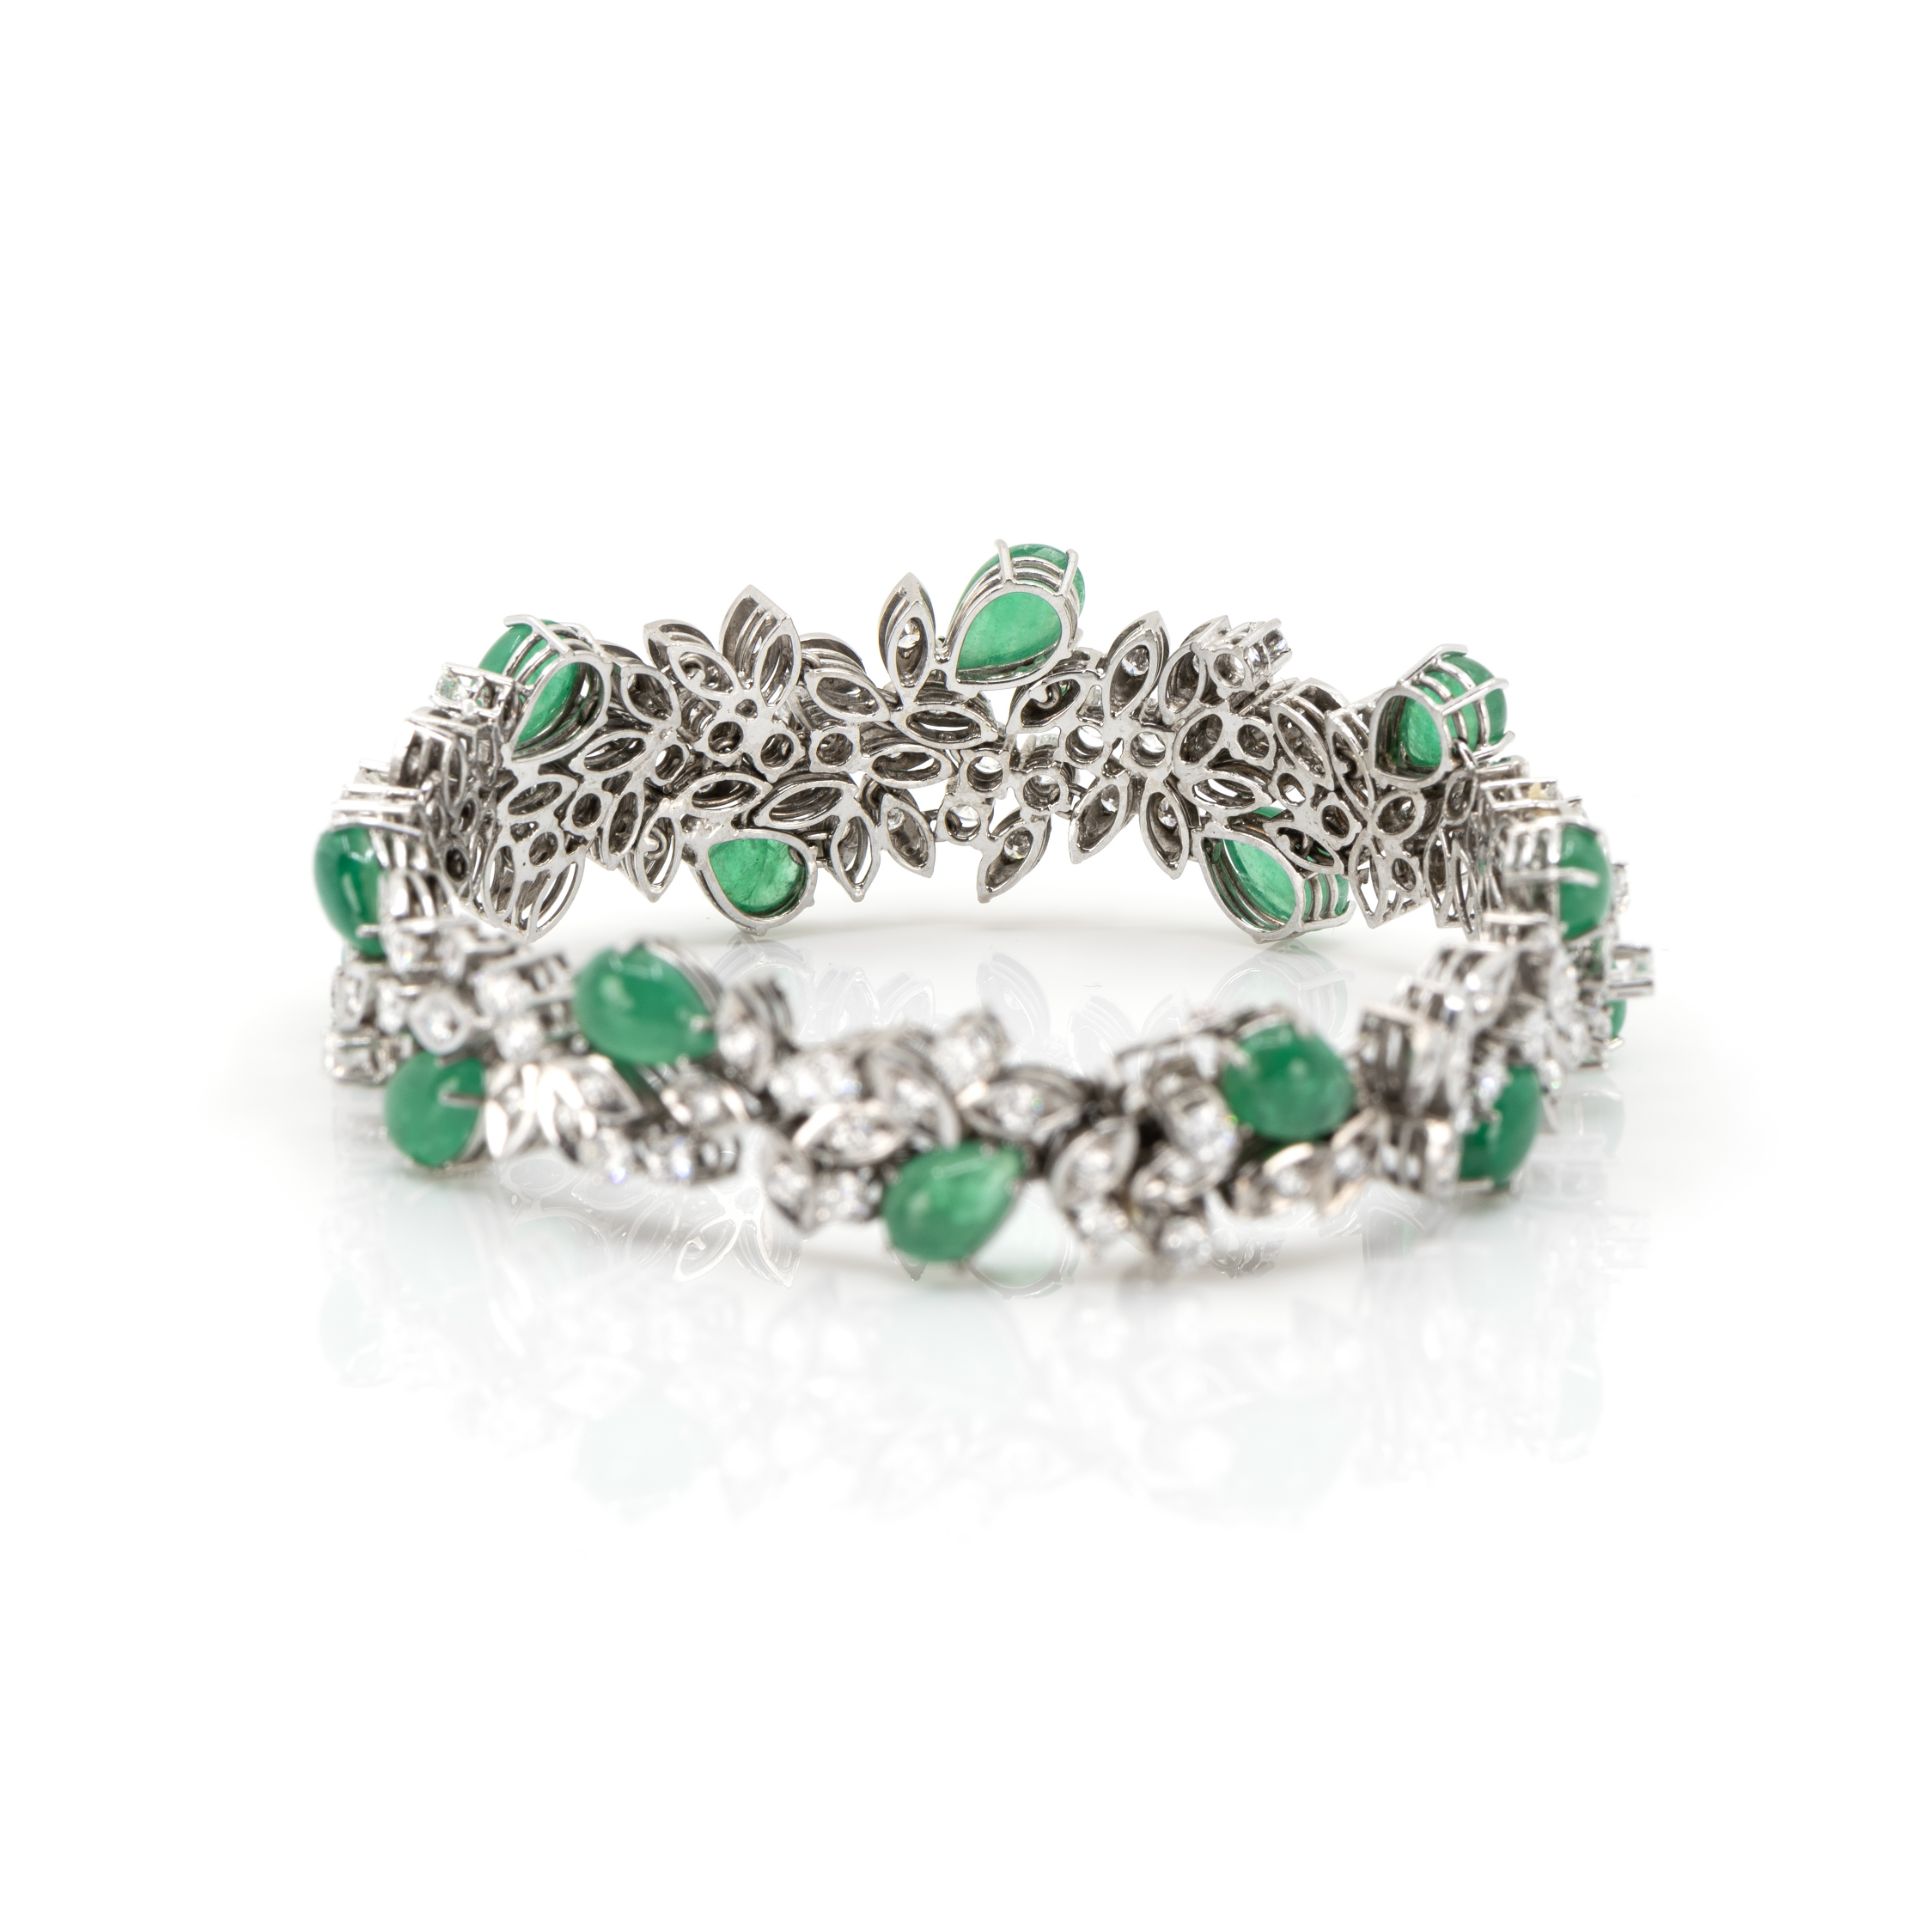 Collier und Armband mit Smaragd-Diamantbesatz - Bild 7 aus 8